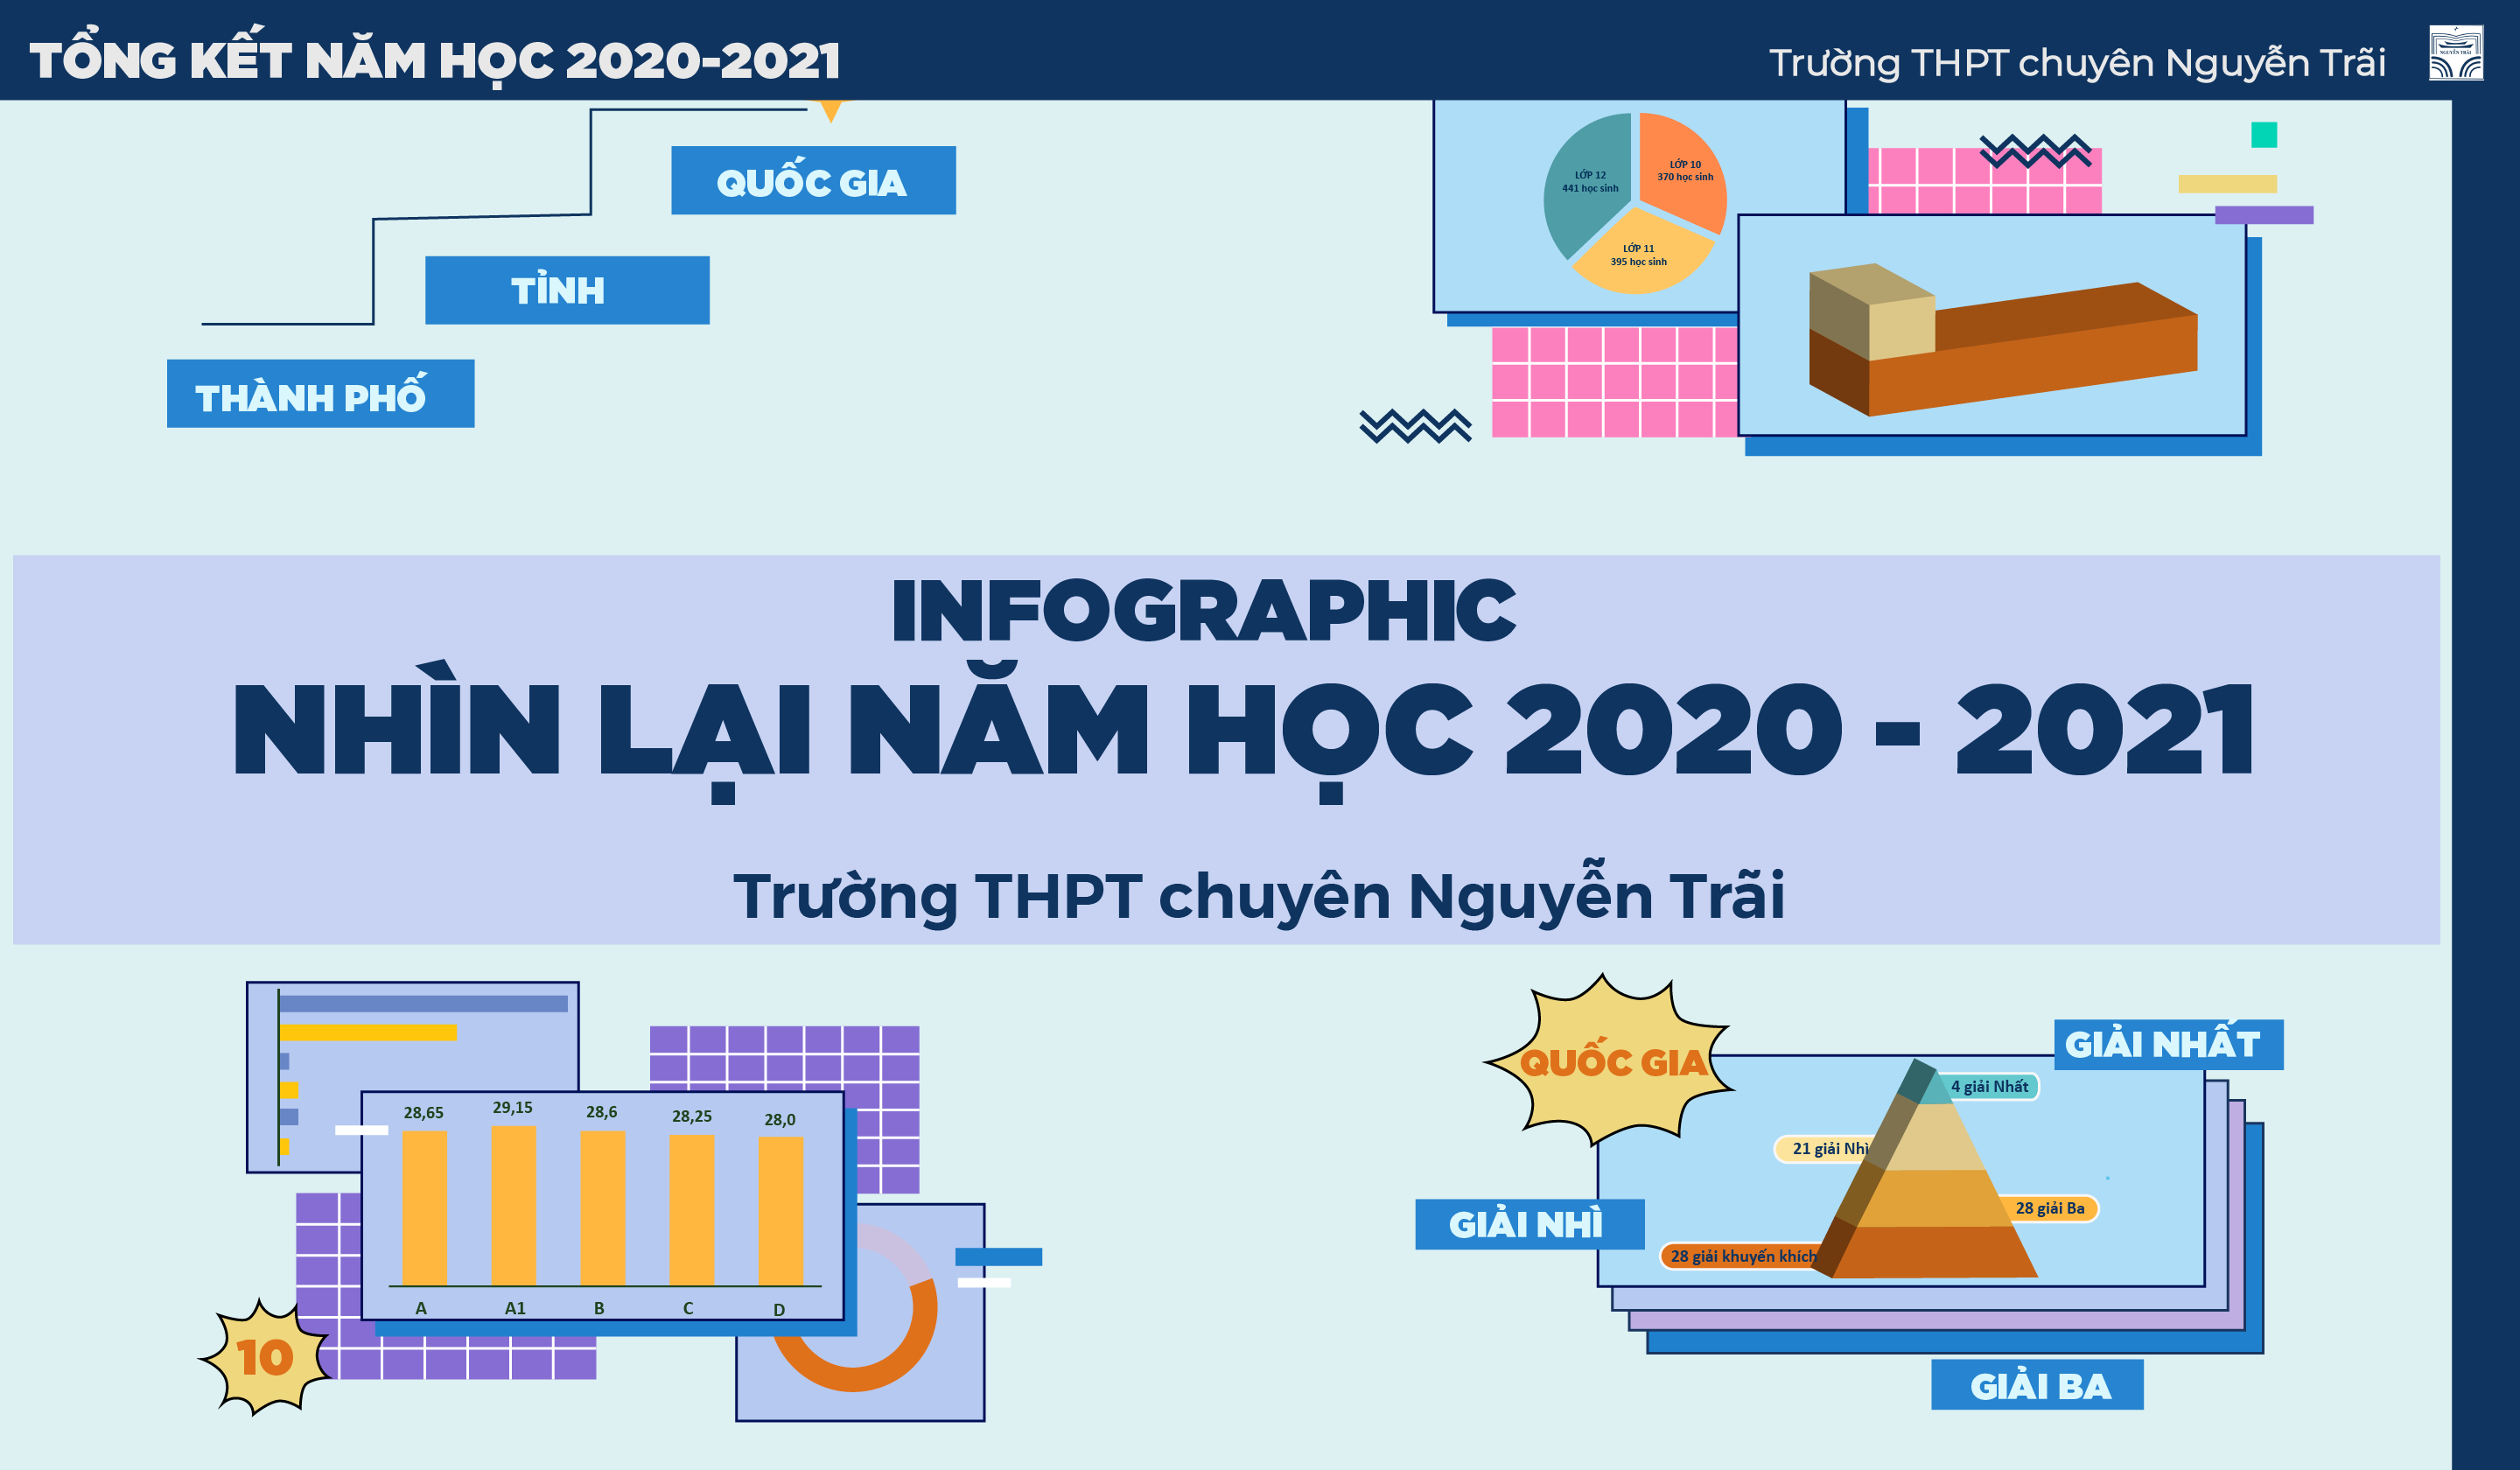 Infographic: Nhìn lại năm học 2020 - 2021 của trường THPT chuyên Nguyễn Trãi